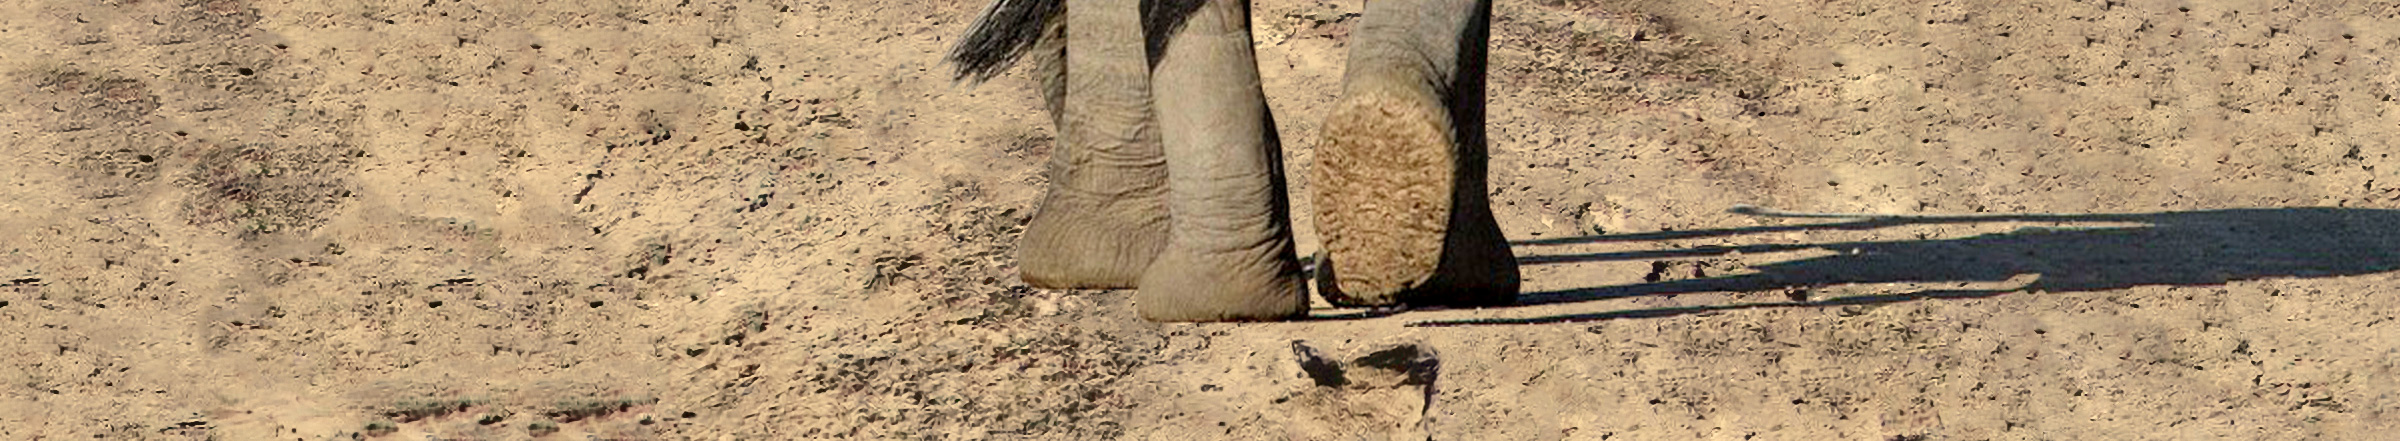 Fußabdruck eines Elefanten